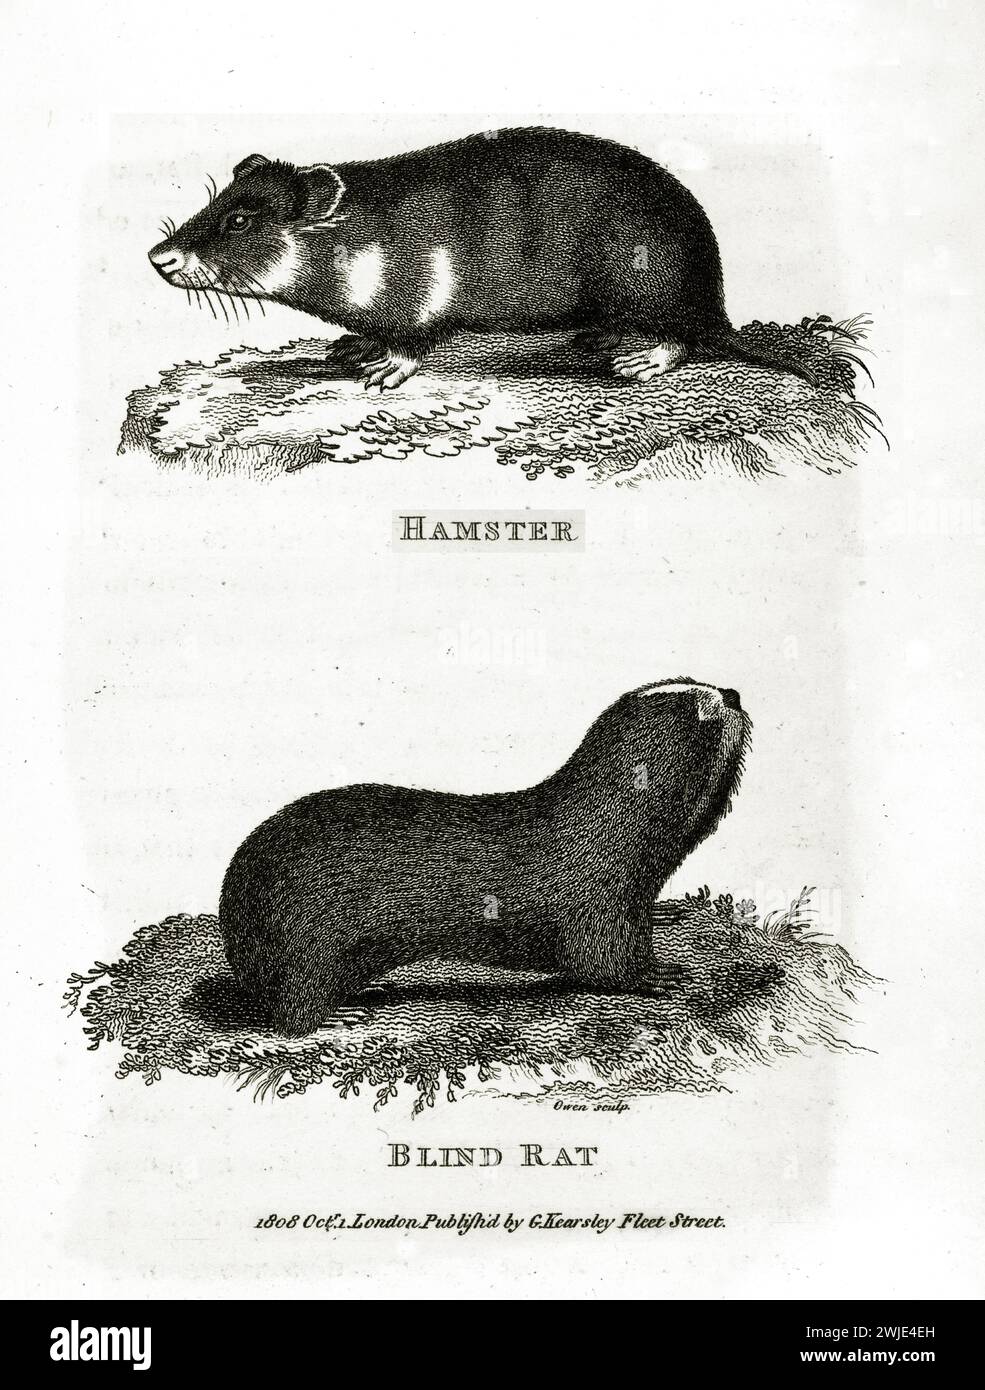 Alte eingravierte Doppelillustration von Blind Ratte und Hamster. Erstellt von George Shaw, veröffentlicht in Zoological Lectures, London, 1809. Stockfoto